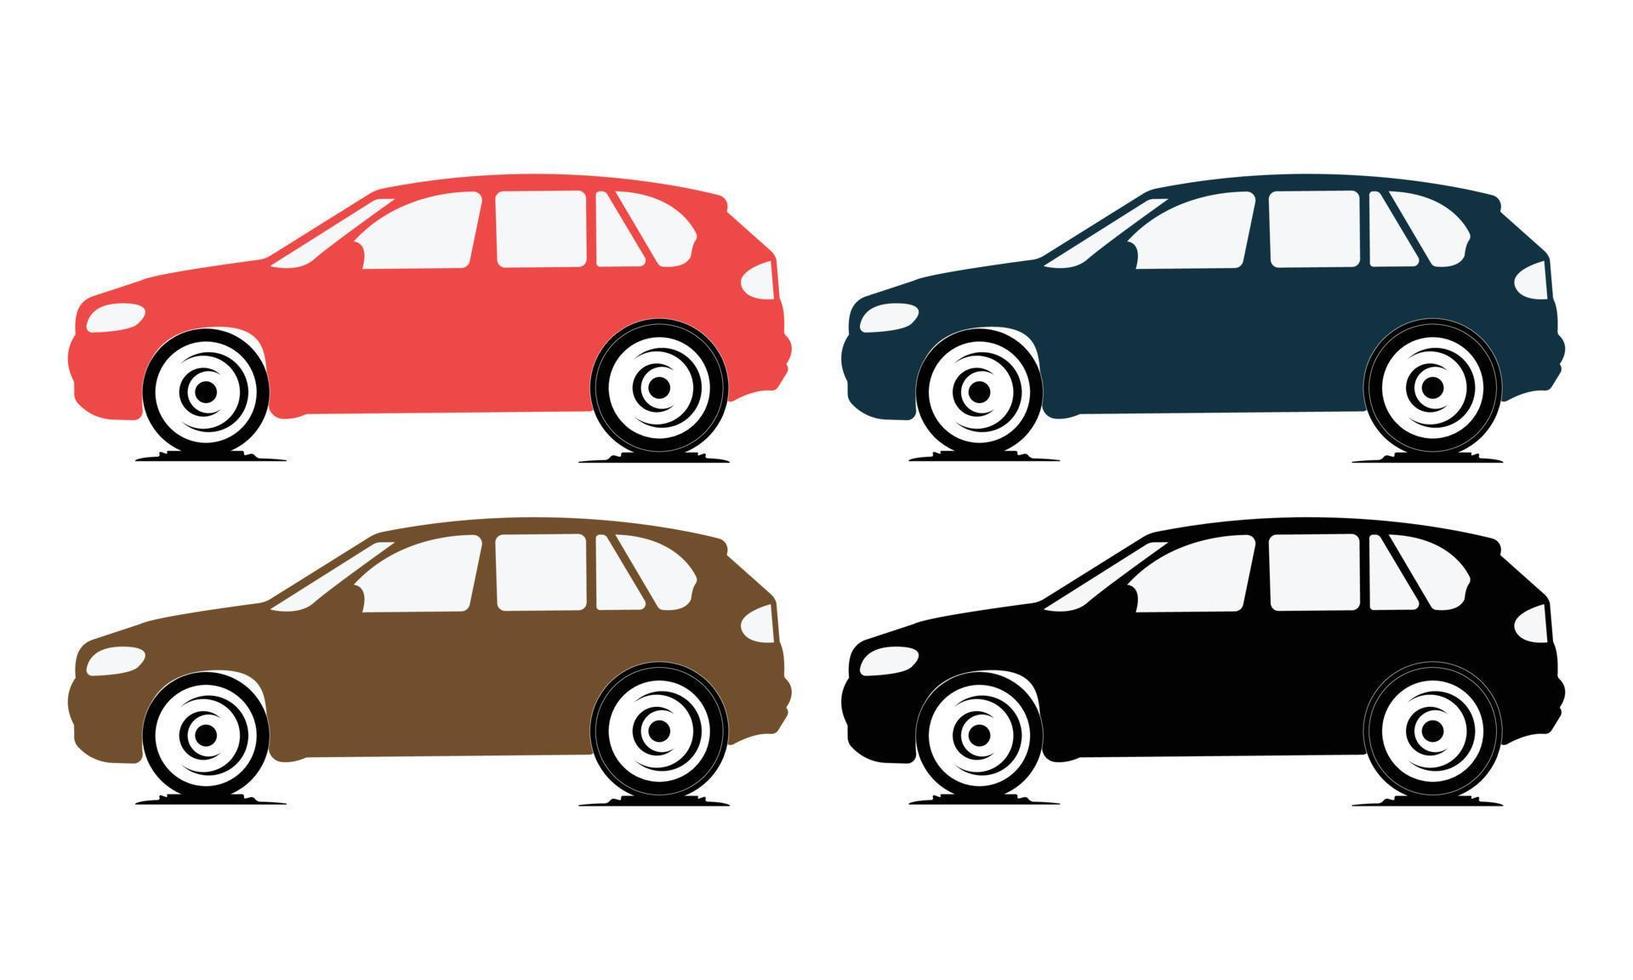 conception de voiture, de vecteur et d'illustration, illustration vectorielle d'artisanat de voiture automatique.